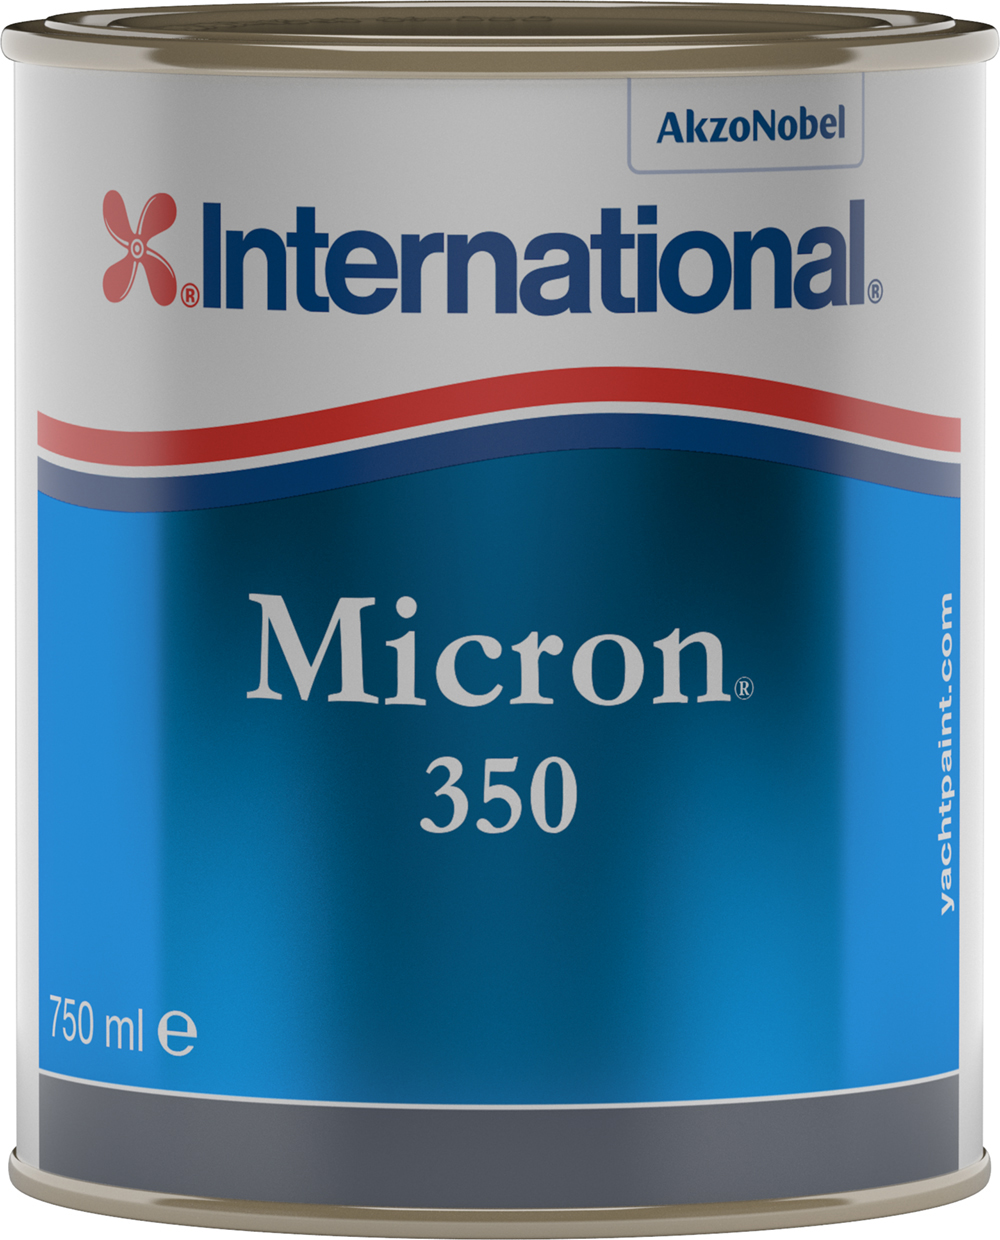 International Micron 350 Antifouling